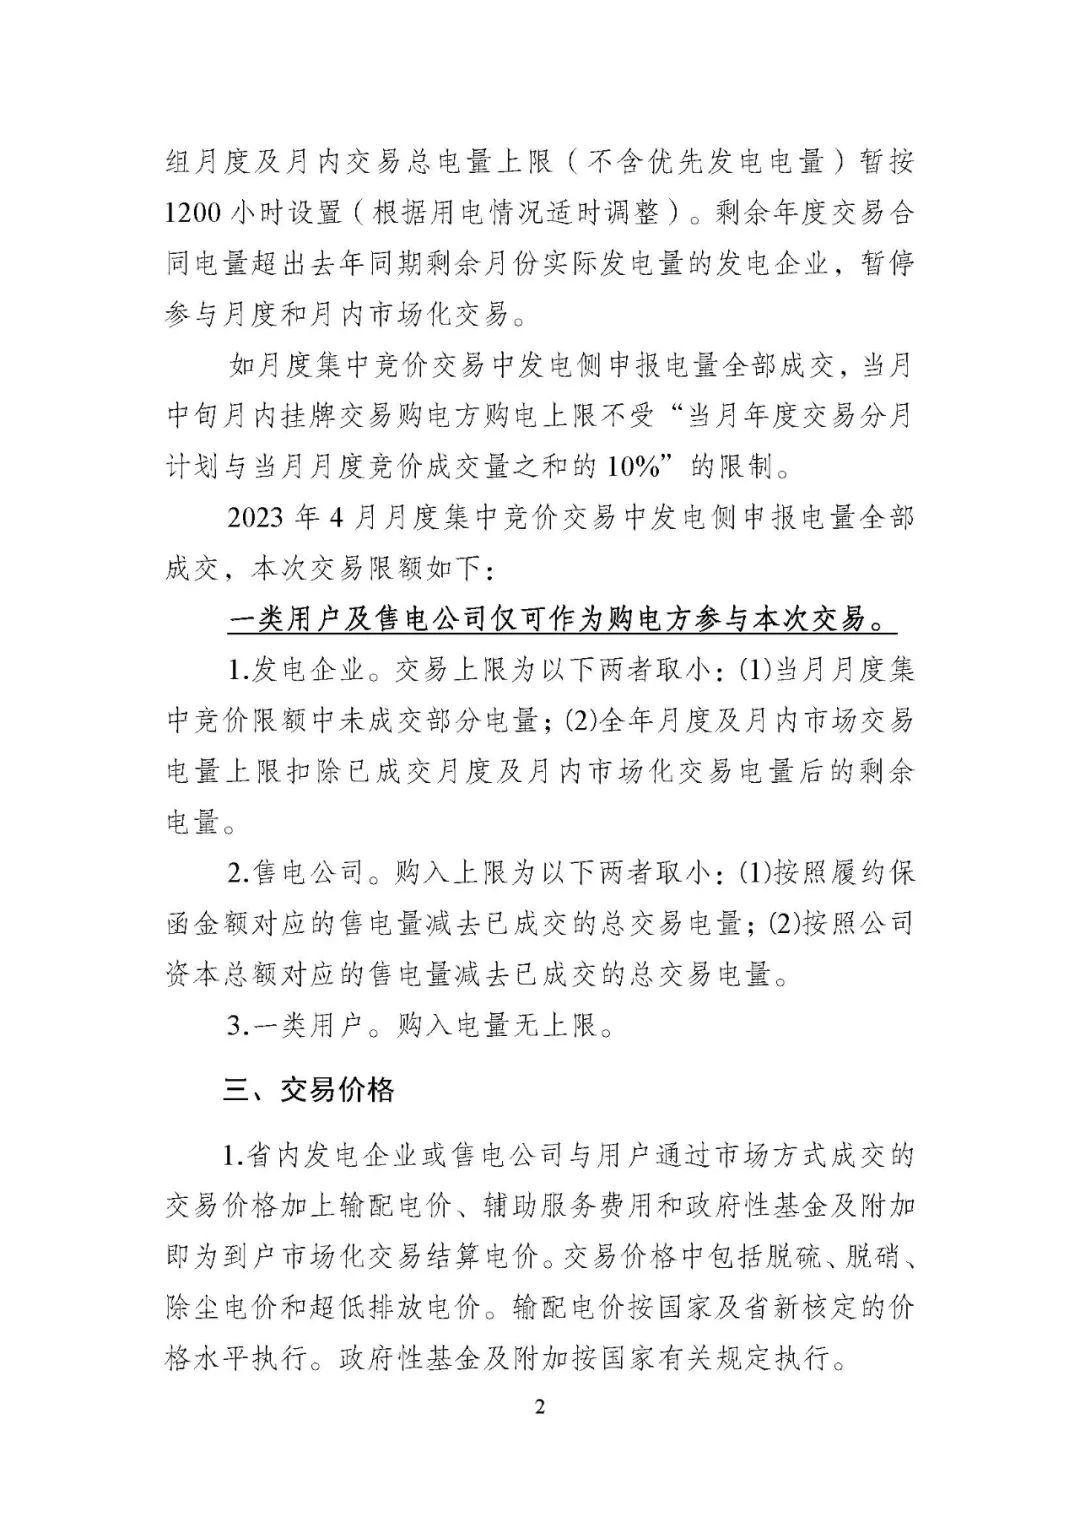 2023年4月中旬江苏电力市场月内挂牌交易公告